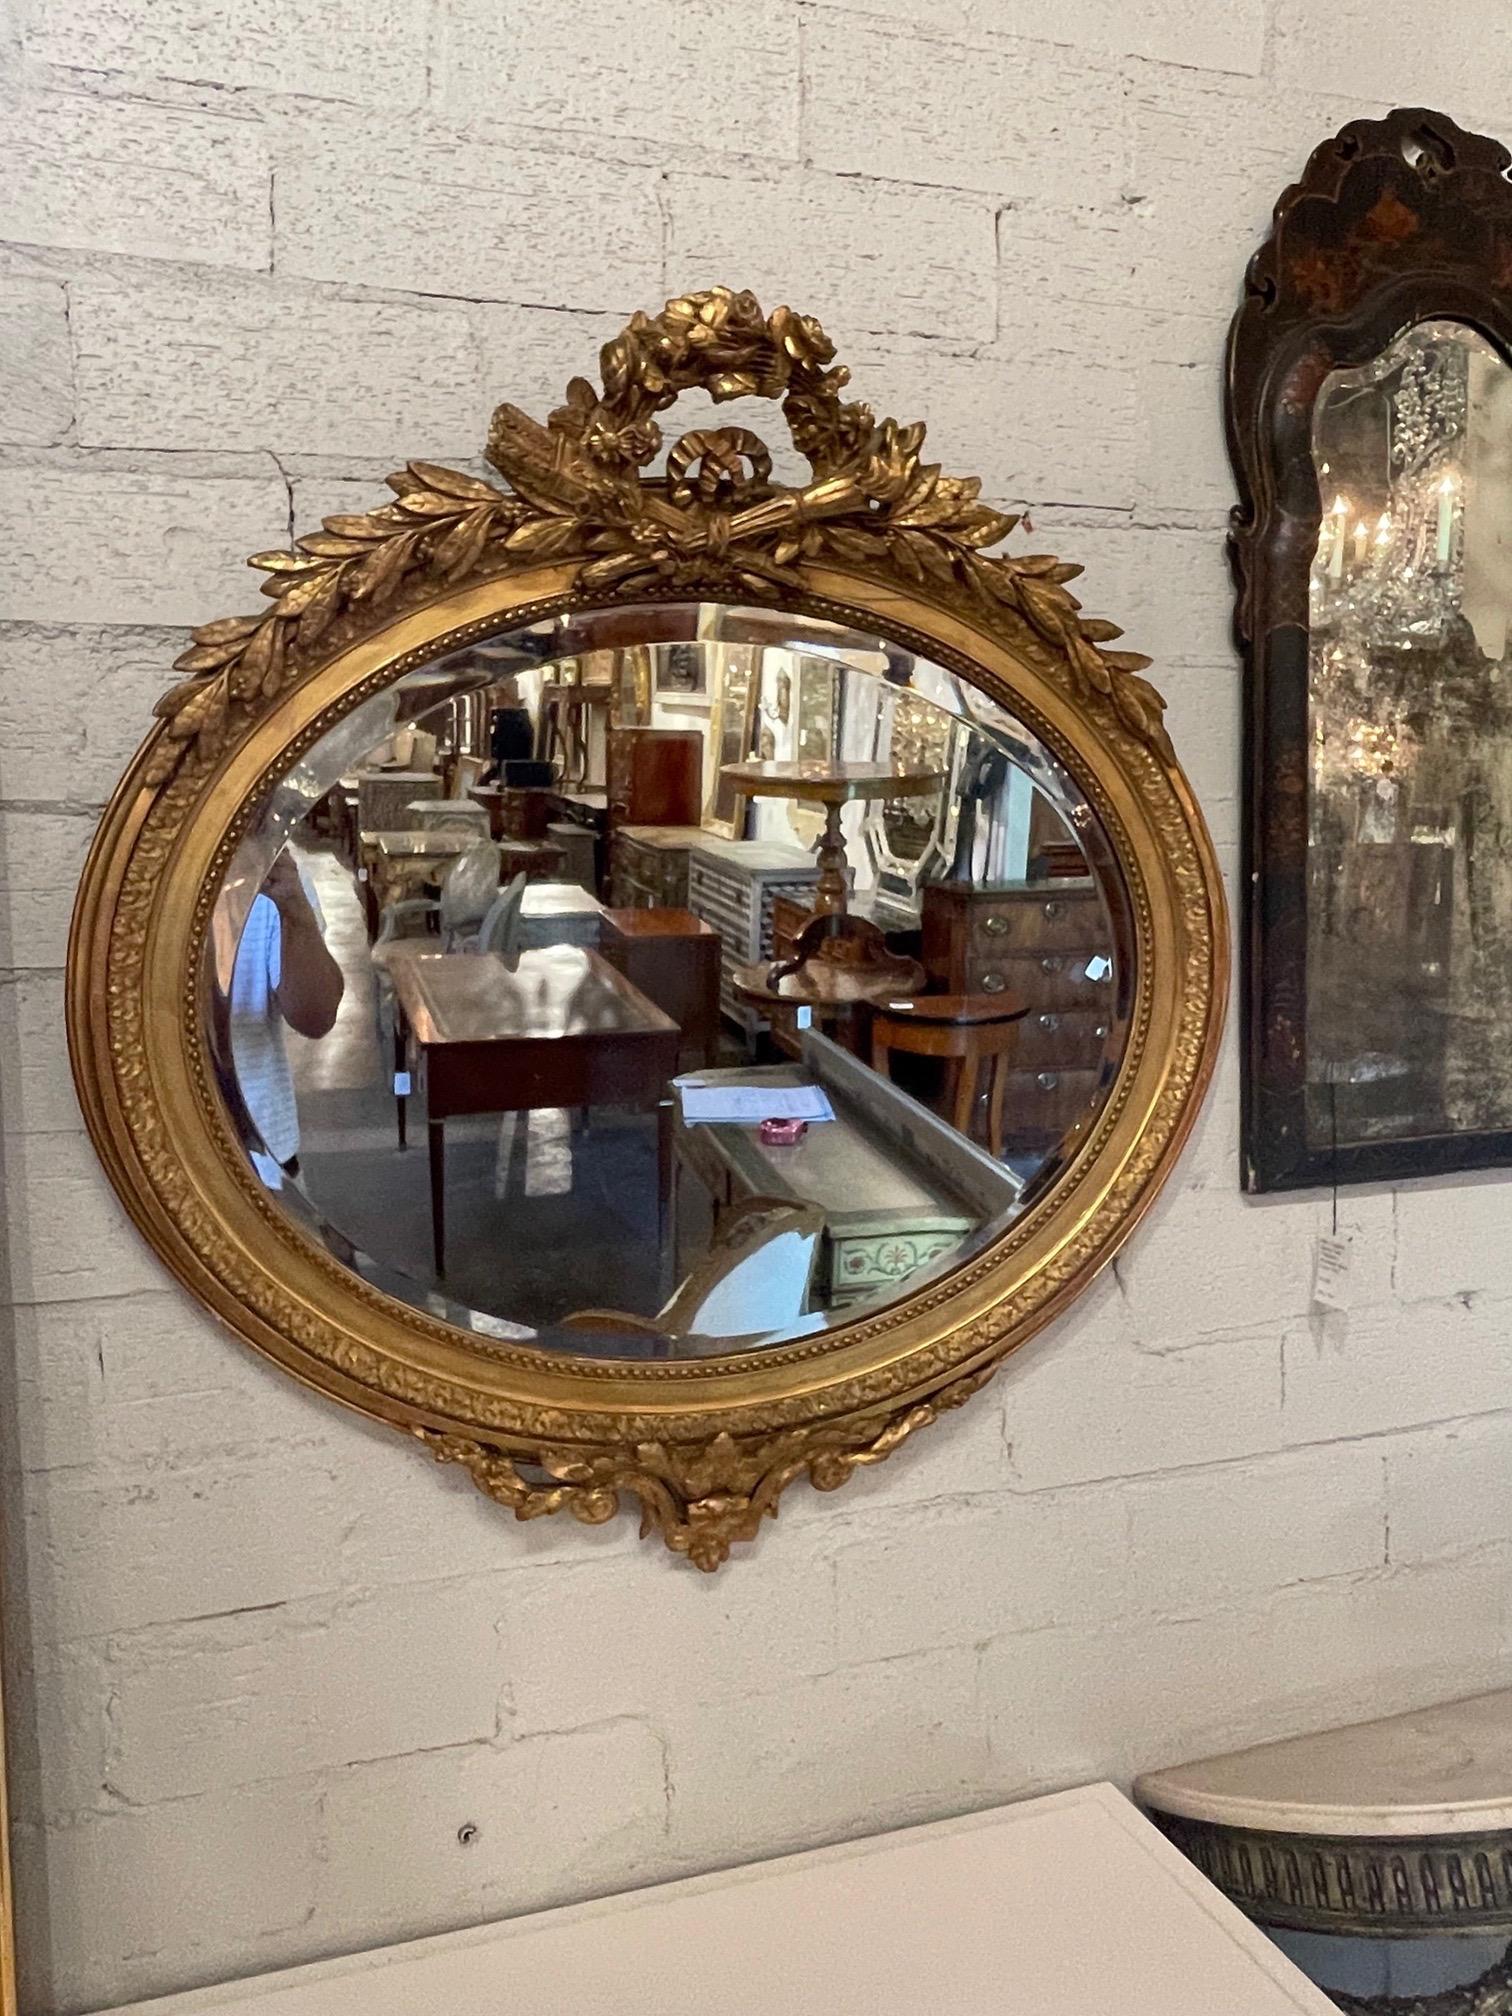 Exquis miroir ovale biseauté en bois doré de style Louis XVI français du 19e siècle. Ce miroir présente une sculpture exceptionnelle. C'est une déclaration impressionnante !